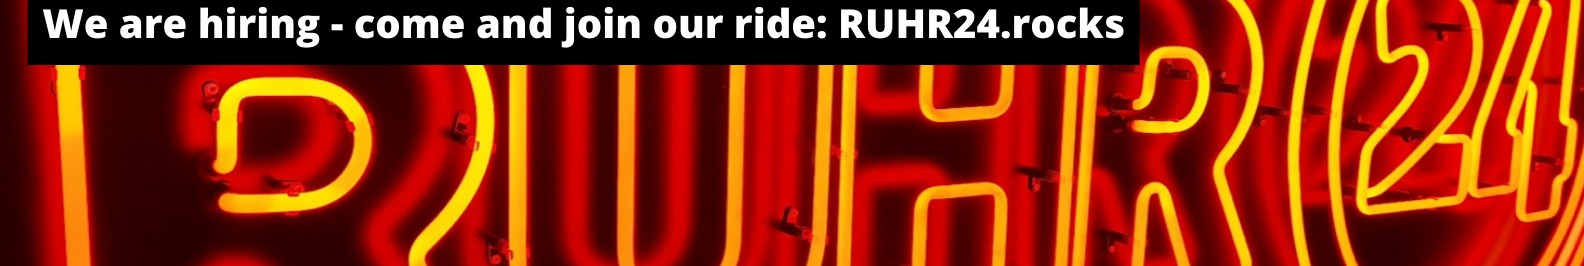 RUHR24 GmbH background